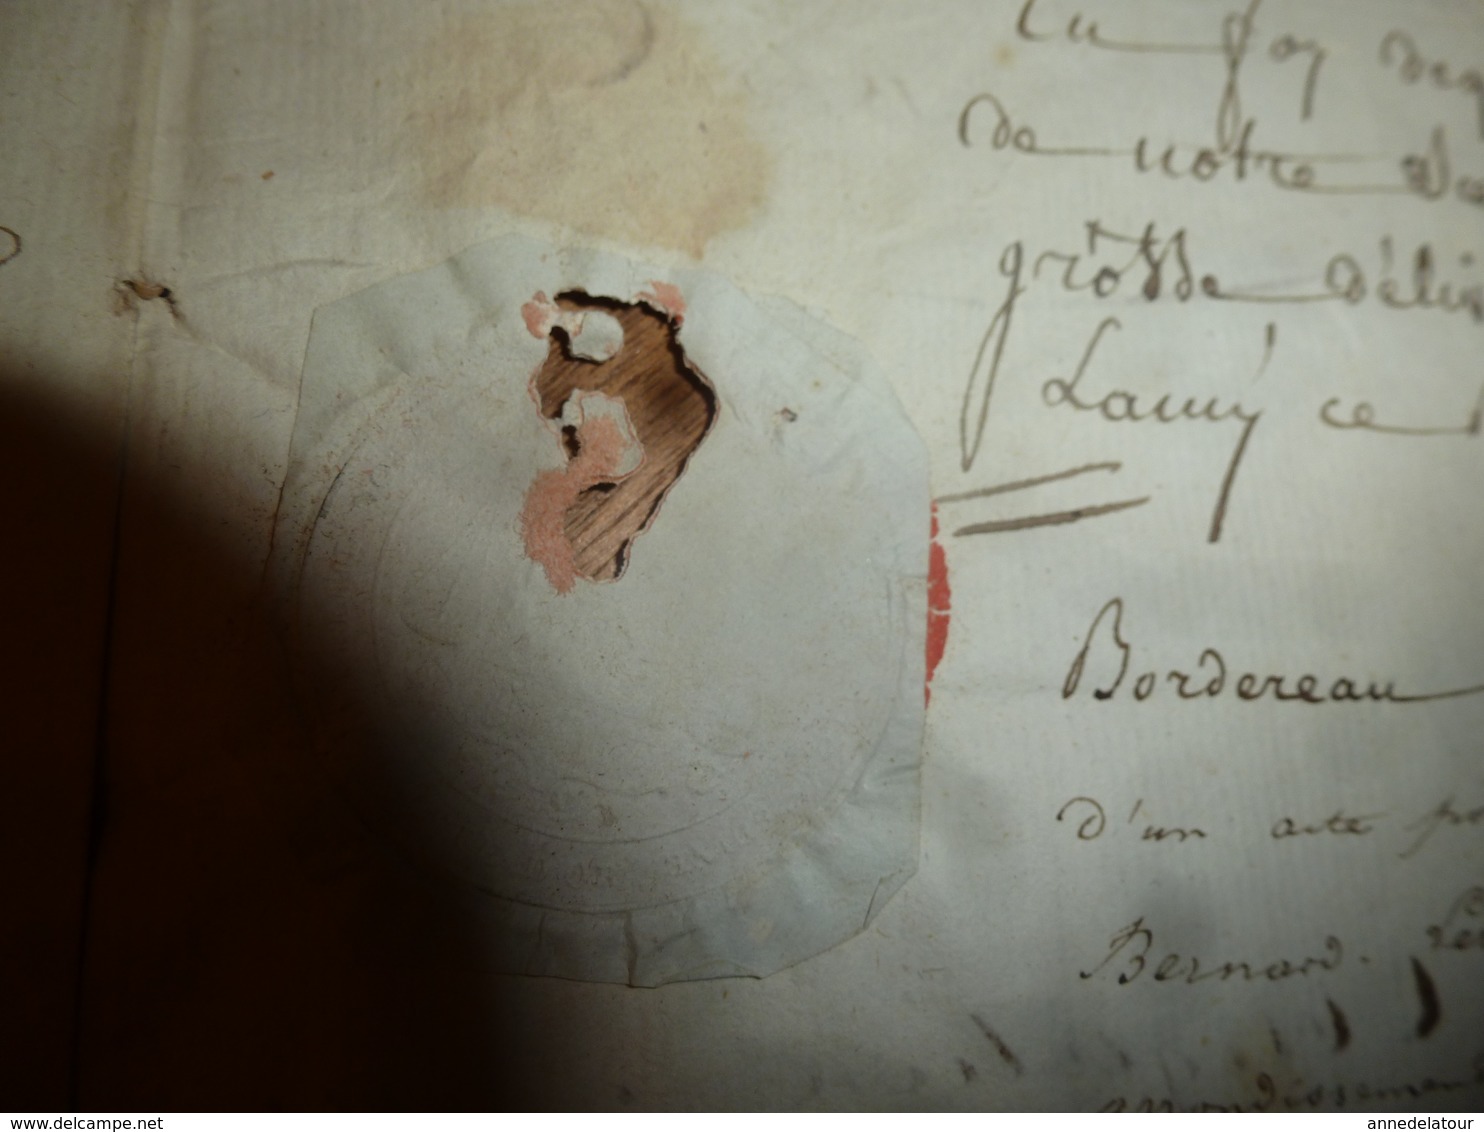 1835 Manuscrits notariés avec cachets,à CHATILLON concernant -->Bondeveau, Laurent-Sauvages,Nicolas Bessey instituteur